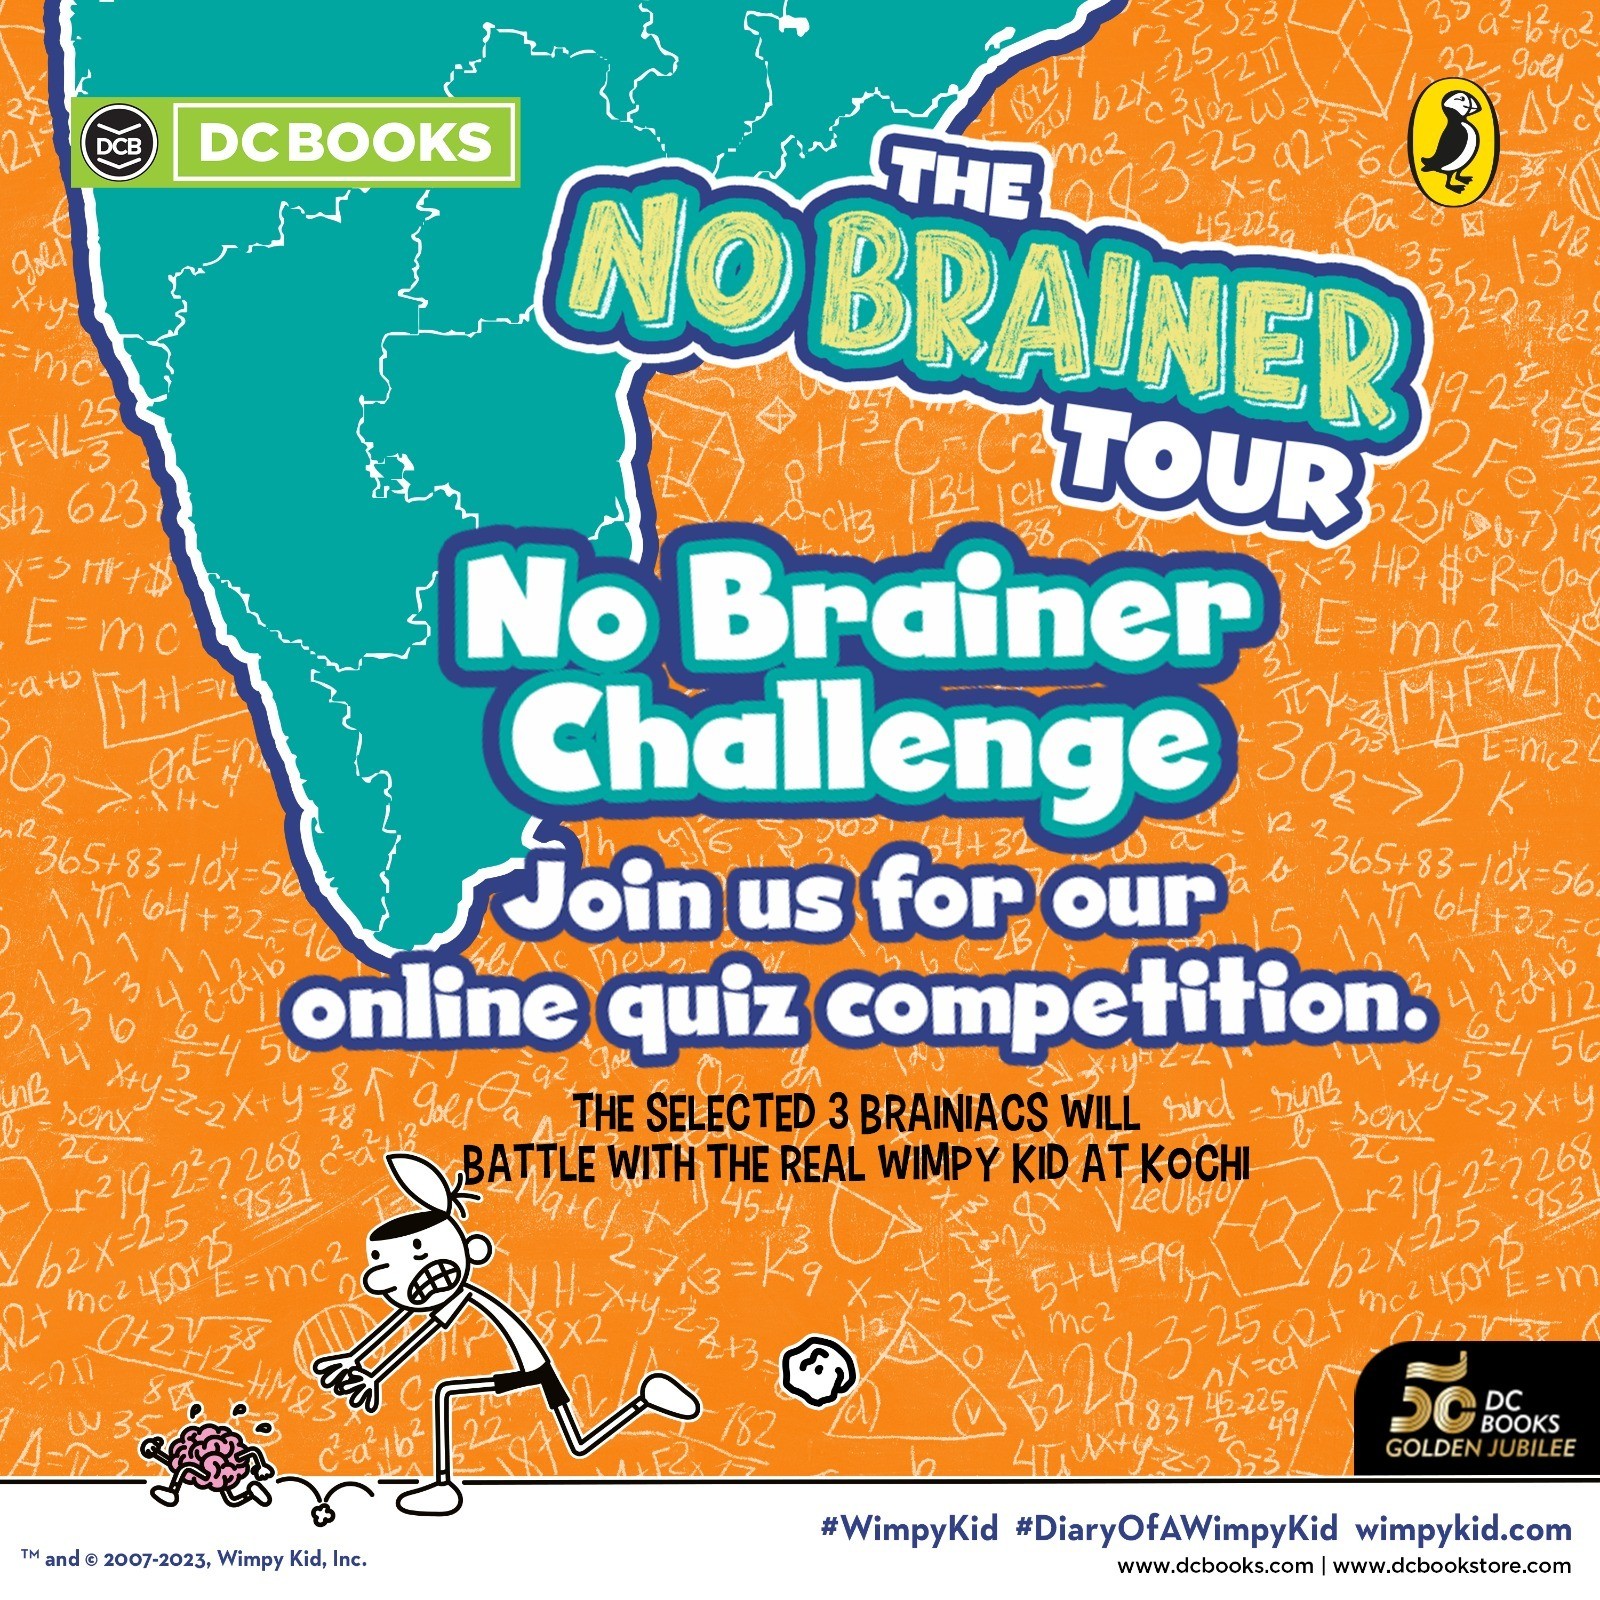 No Wimpy Kid:The No Brainer Tour- Jeff Kinney @ KochiBrainer Challenge